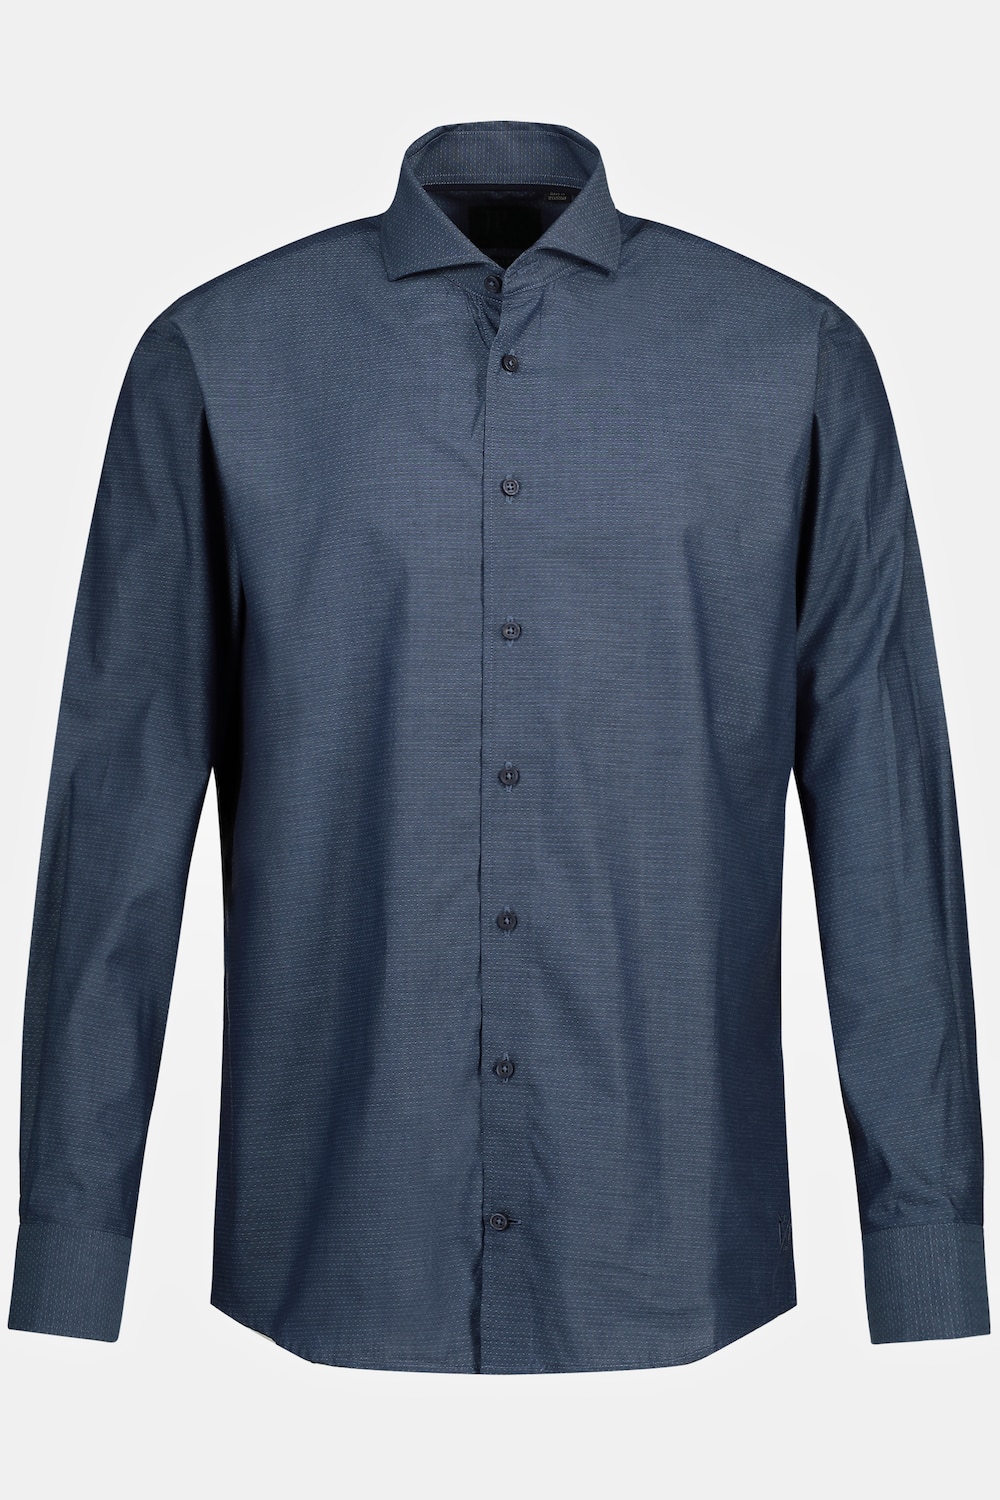 Grote Maten Zakelijk overhemd, Heren, blauw, Maat: L, Katoen, JP1880